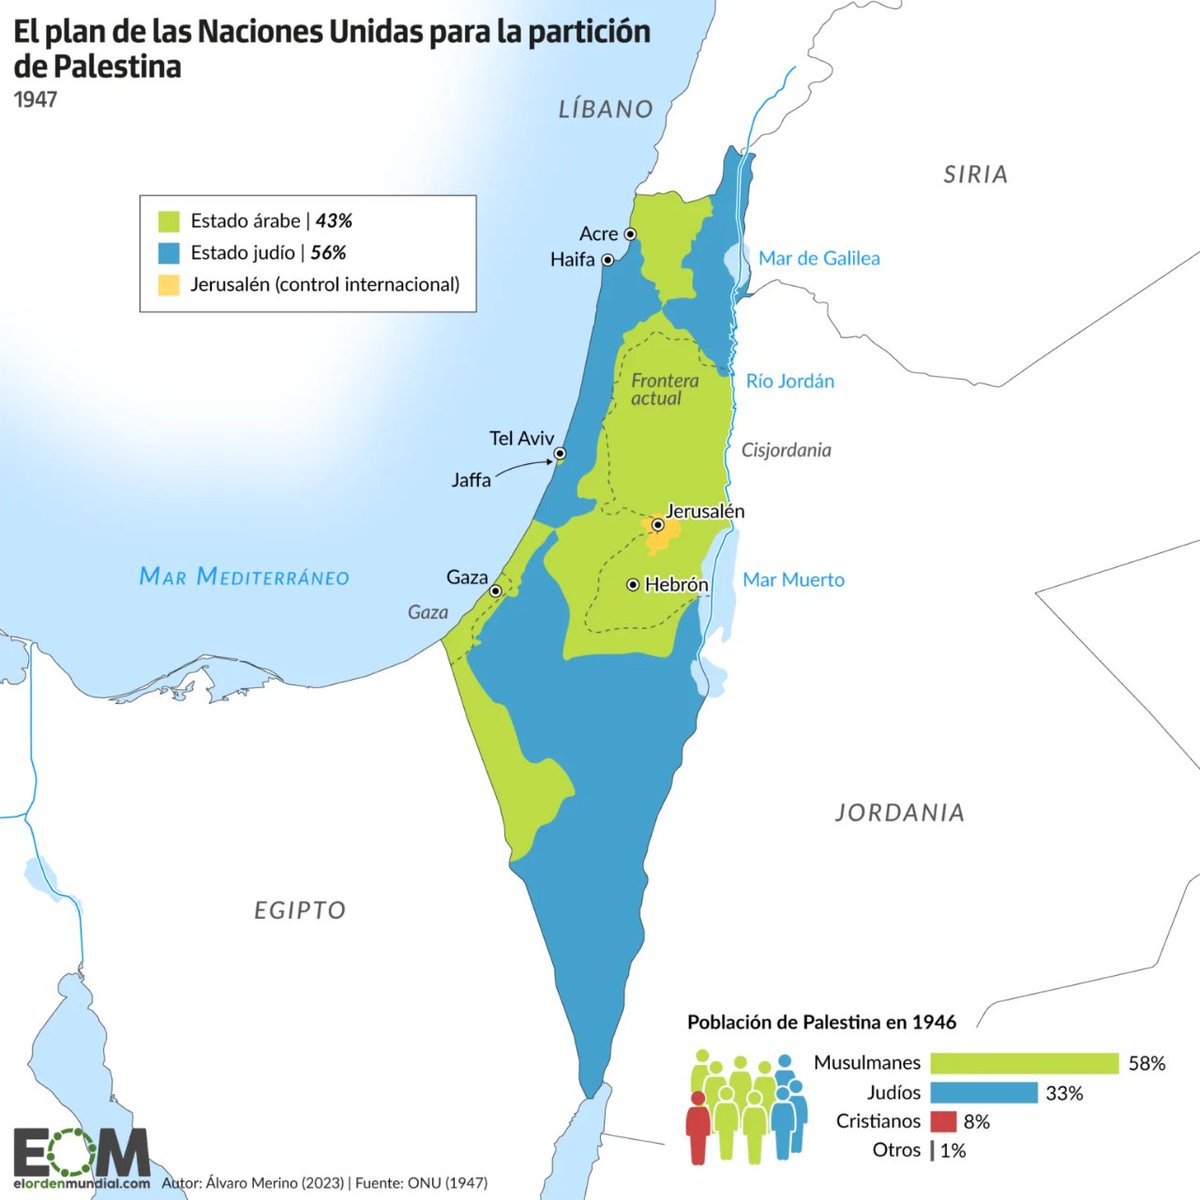 🇺🇳Esta fue la propuesta de la ONU para la partición de Palestina de 1947 🇺🇳 La propuesta dividía Palestina en tres partes: 👉Un Estado judío.  👉Un Estado árabe. 👉Y la ciudad de Jerusalén bajo control internacional. elordenmundial.com/mapas-y-grafic…